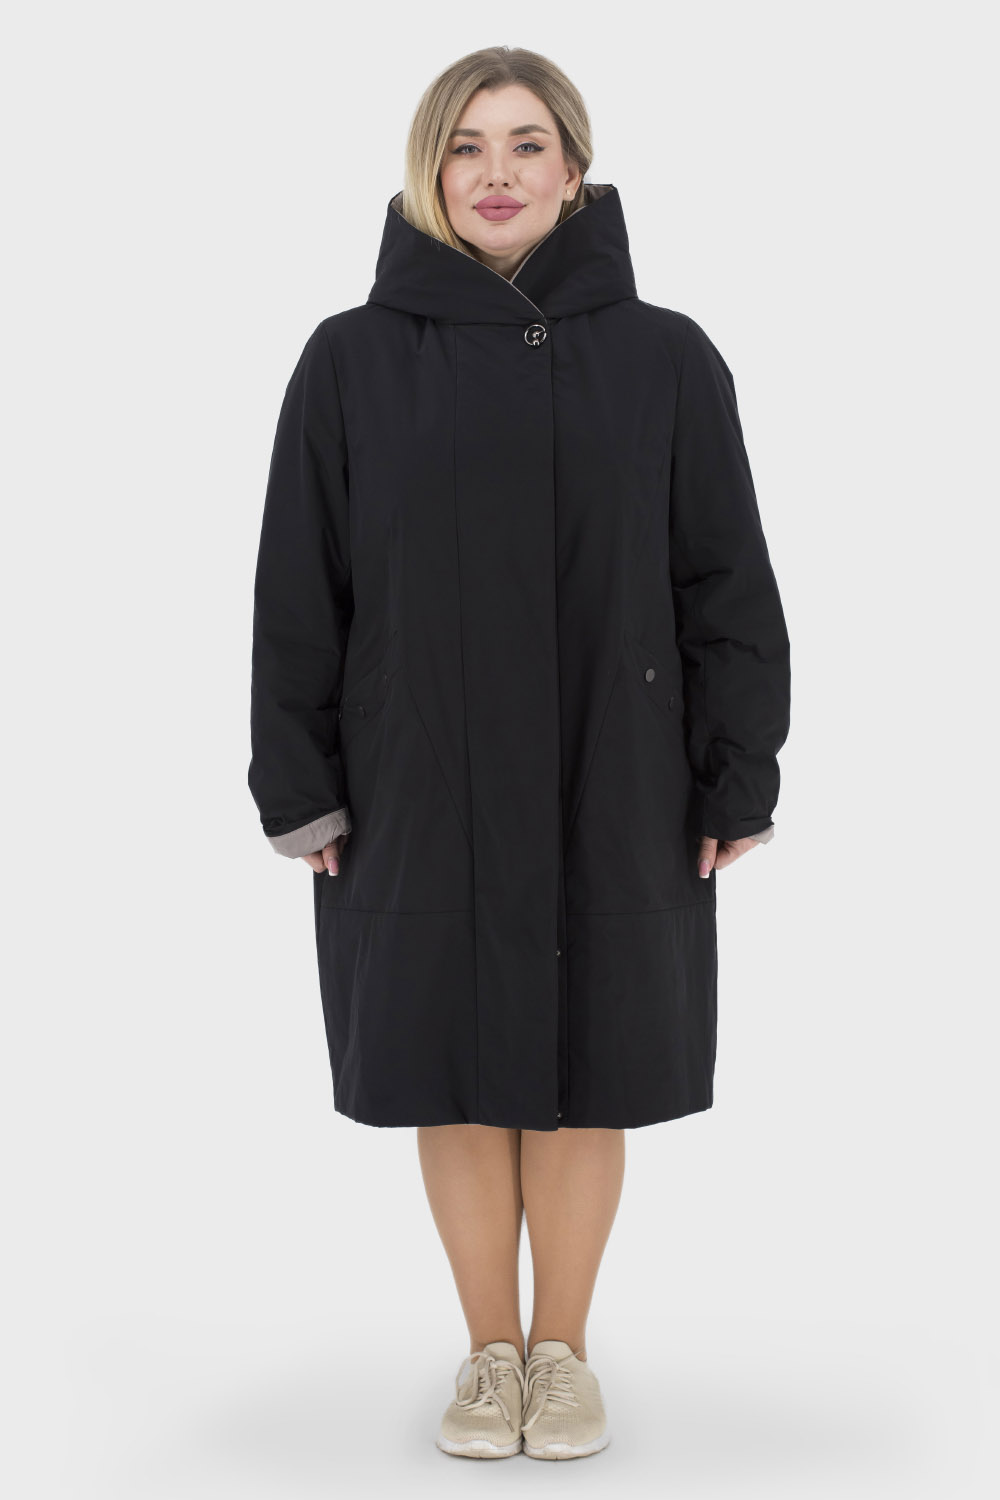 Женское пальто Stella Rossa 65232 (черный) в Киеве, цена, фото — купить в  Bella Bicchi